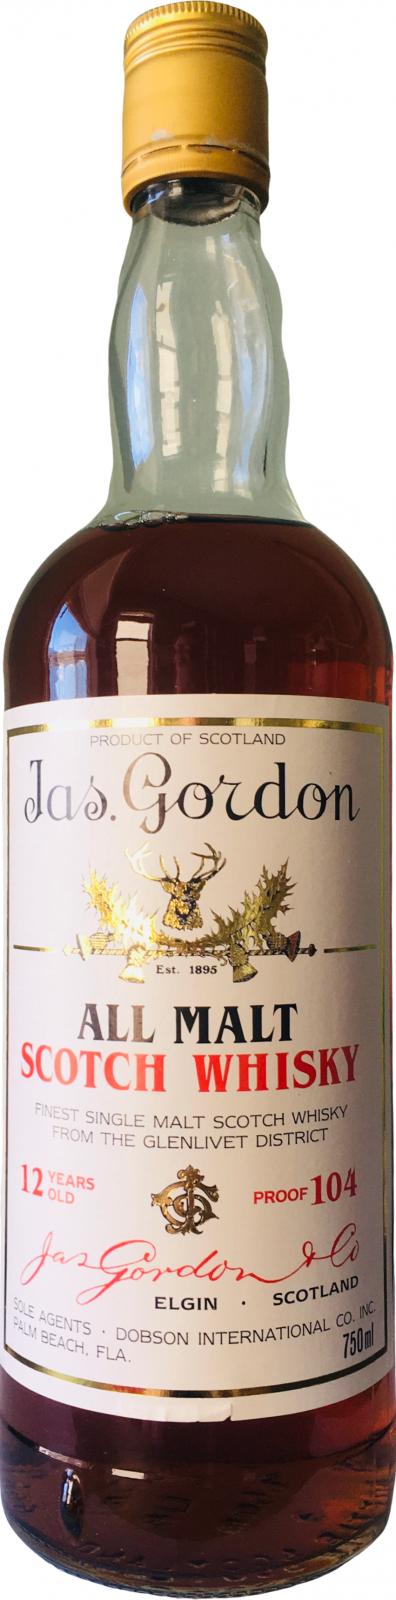 Jas. Gordon & Co 12yo All Malt Scotch Whisky 52% 750ml